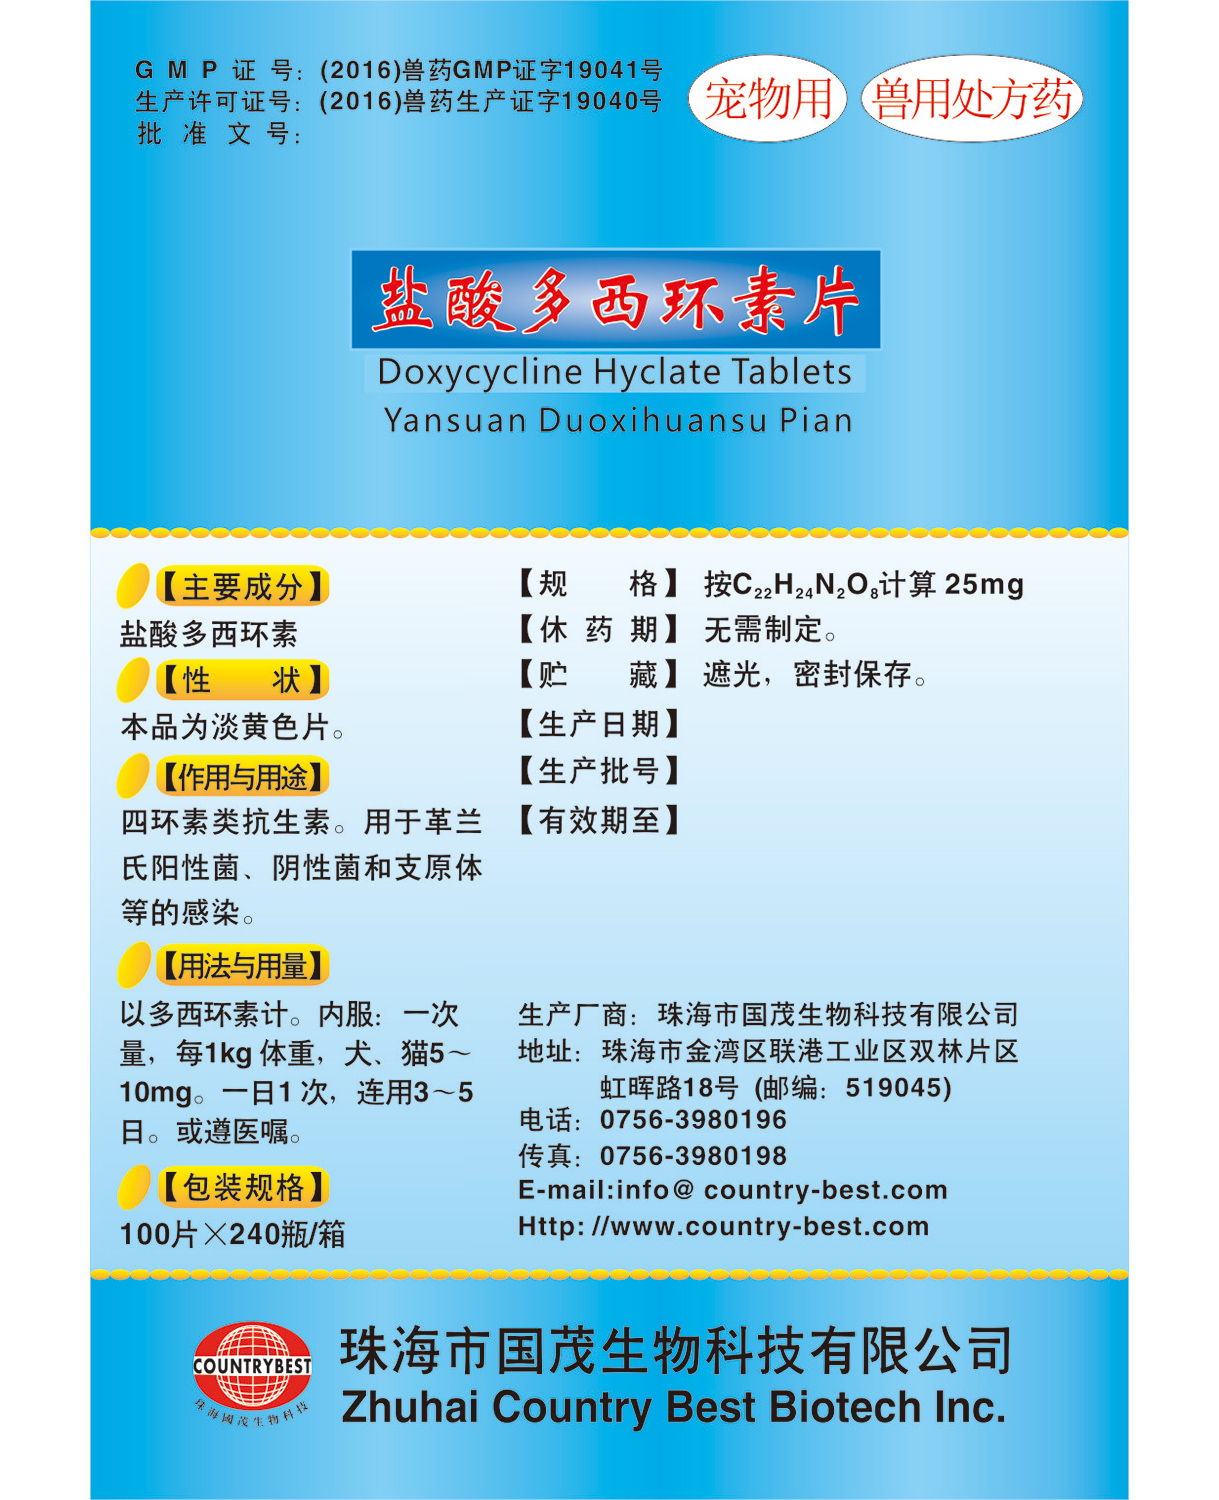 Doxycycline Hyclate Tablets (PET)